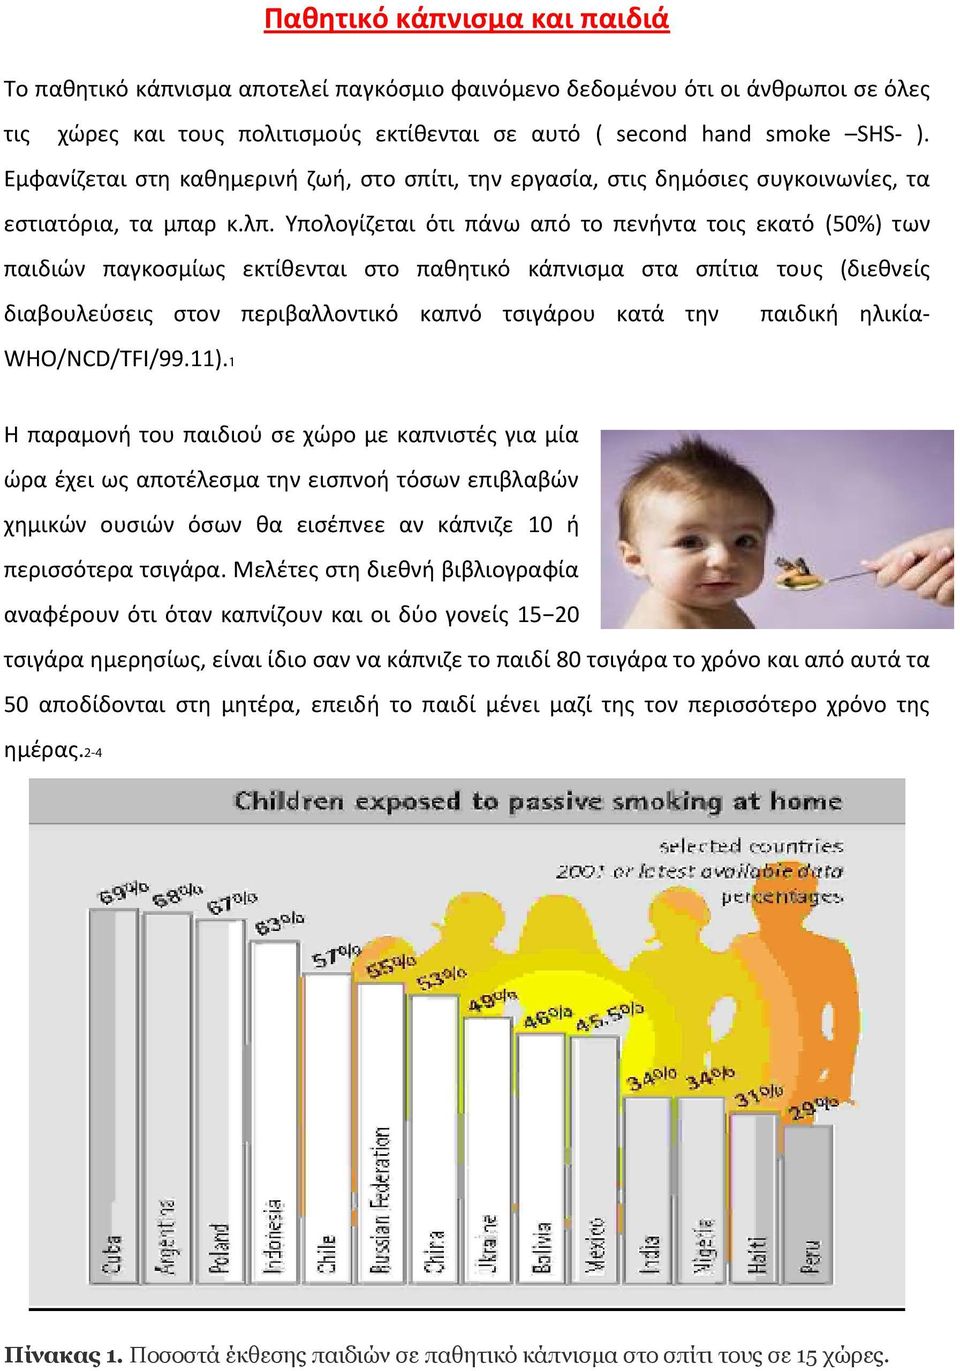 Υπολογίζεται ότι πάνω από το πενήντα τοις εκατό (50%) των παιδιών παγκοσμίως εκτίθενται στο παθητικό κάπνισμα στα σπίτια τους (διεθνείς διαβουλεύσεις στον περιβαλλοντικό καπνό τσιγάρου κατά την